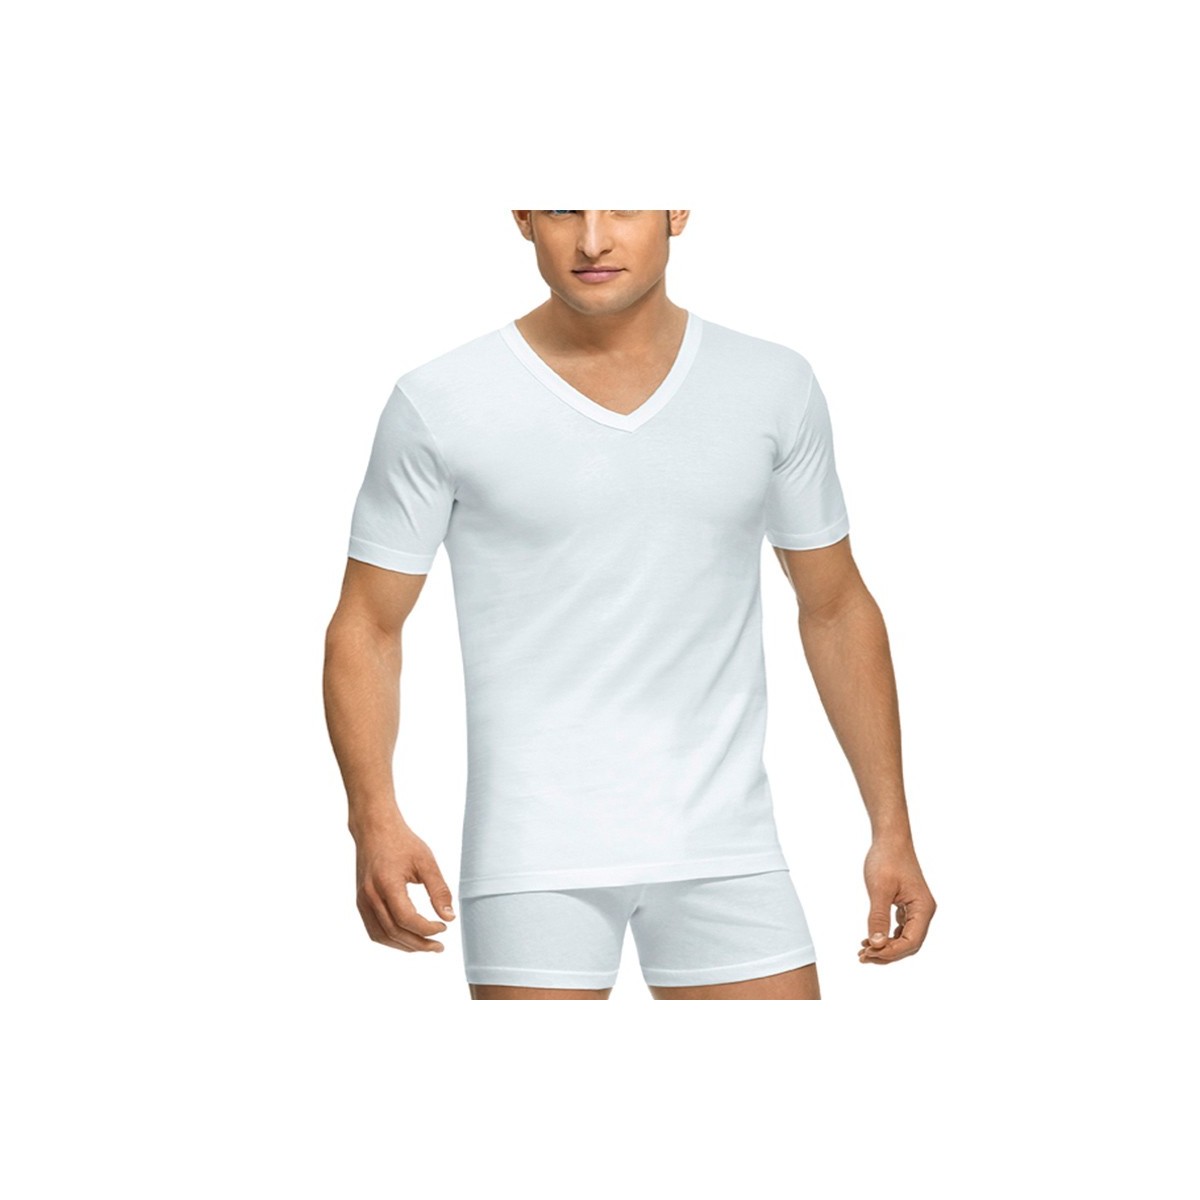 Comprar Camiseta Abanderado Cuello Pico 508 Pack 6 online en Merceriabarata.com